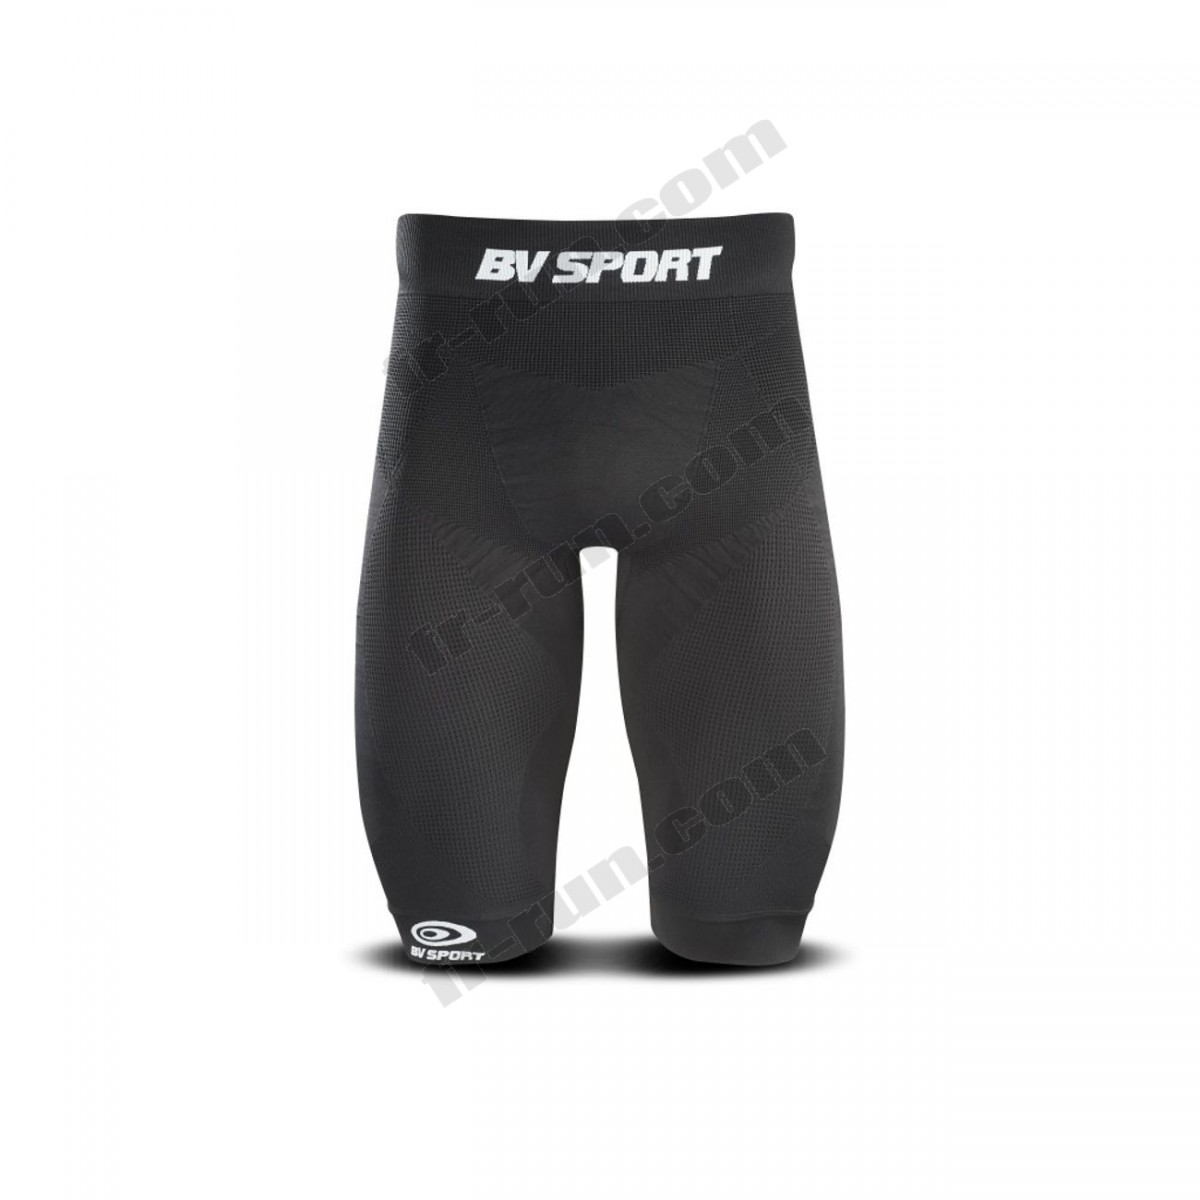 Bv Sport/Fitness homme BV SPORT Cuissard de compression BV Sport CSX Noir √ Nouveau style √ Soldes - -0